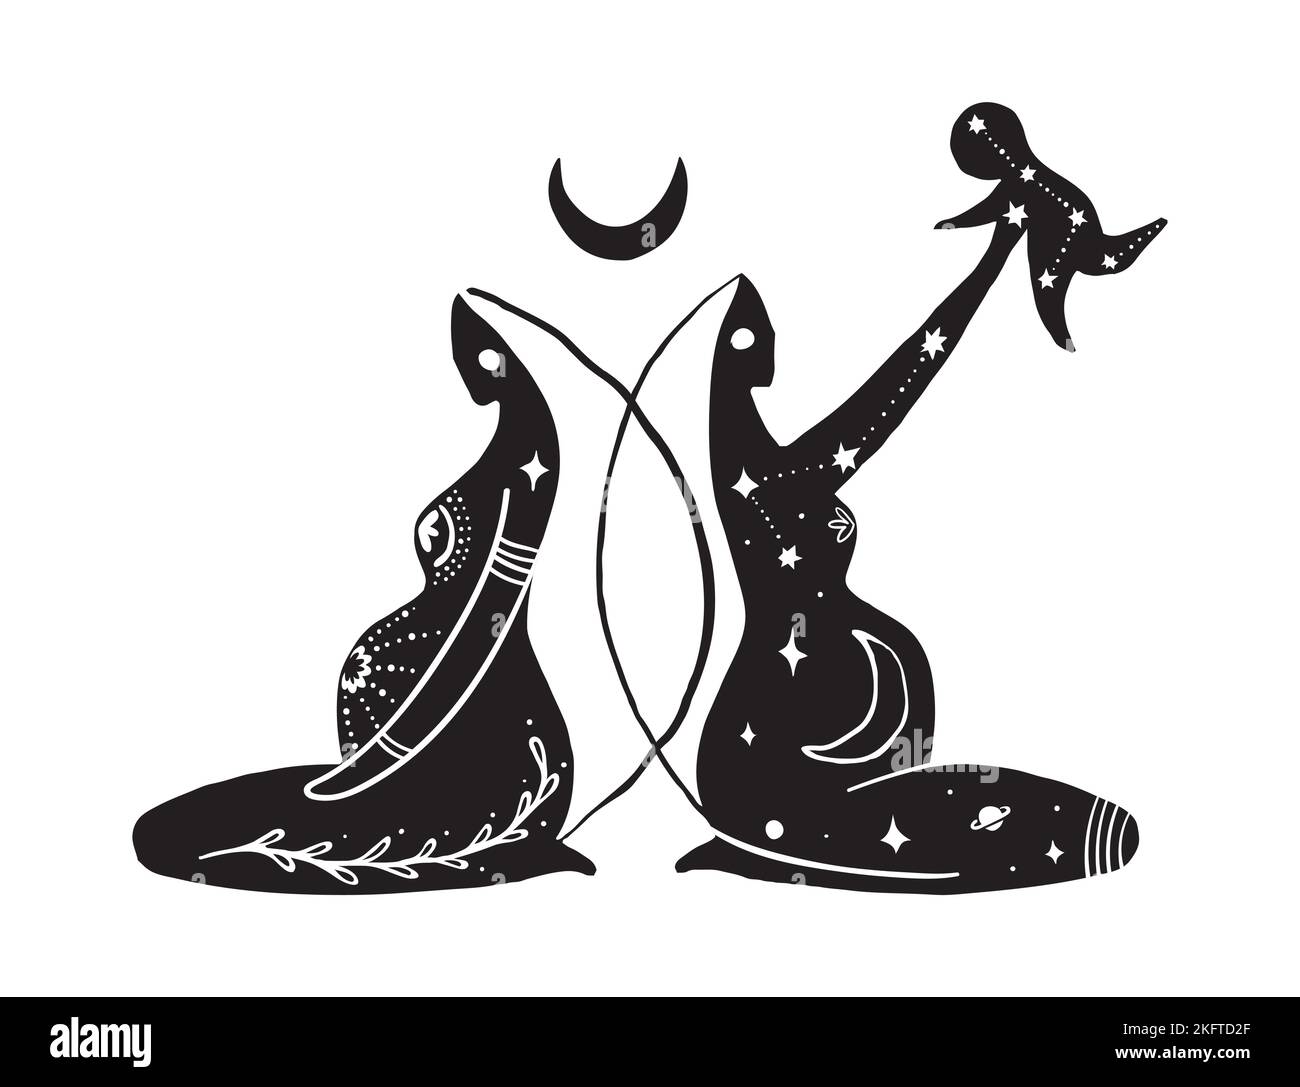 Initiation féminine, symbole sacré féminin, tatouage de boho mystique de la grossesse et de la maternité, mère avec un enfant, maman attend un bébé, le sacré Illustration de Vecteur